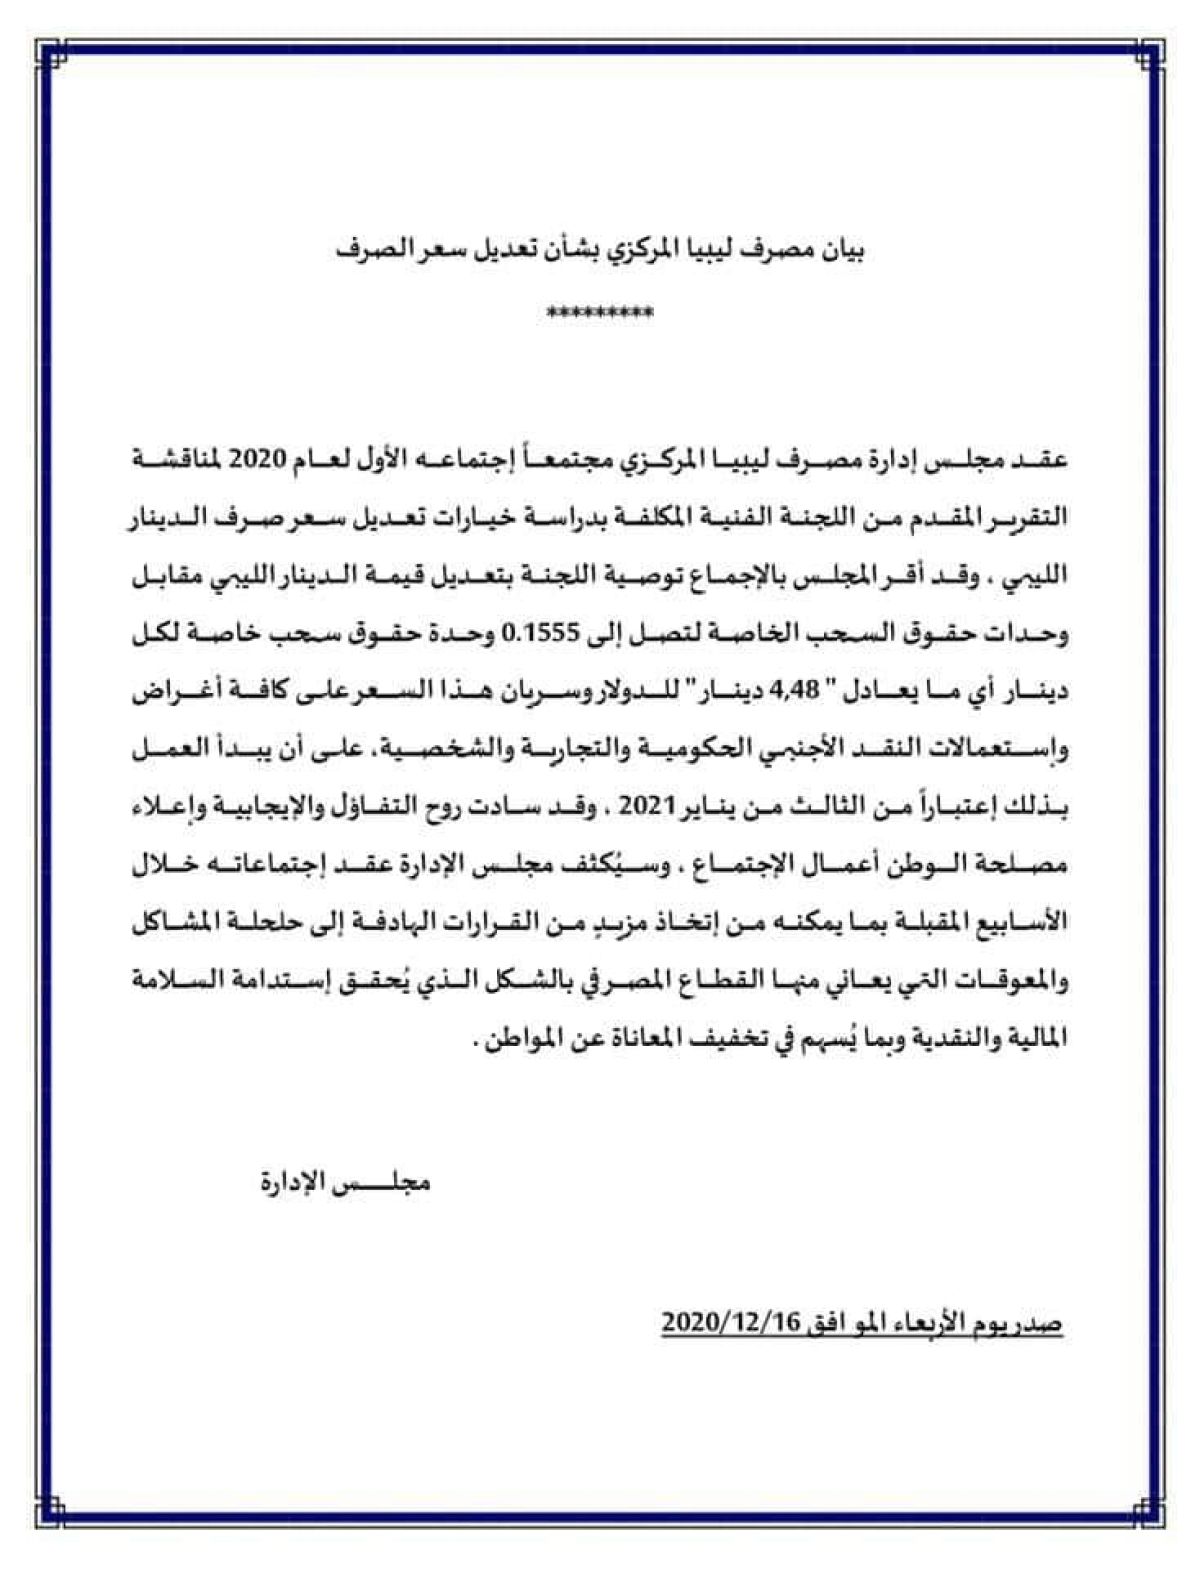 بيان مصرف ليبيا المركزي حول تعديل سعر الصرف الرسمي للدينار